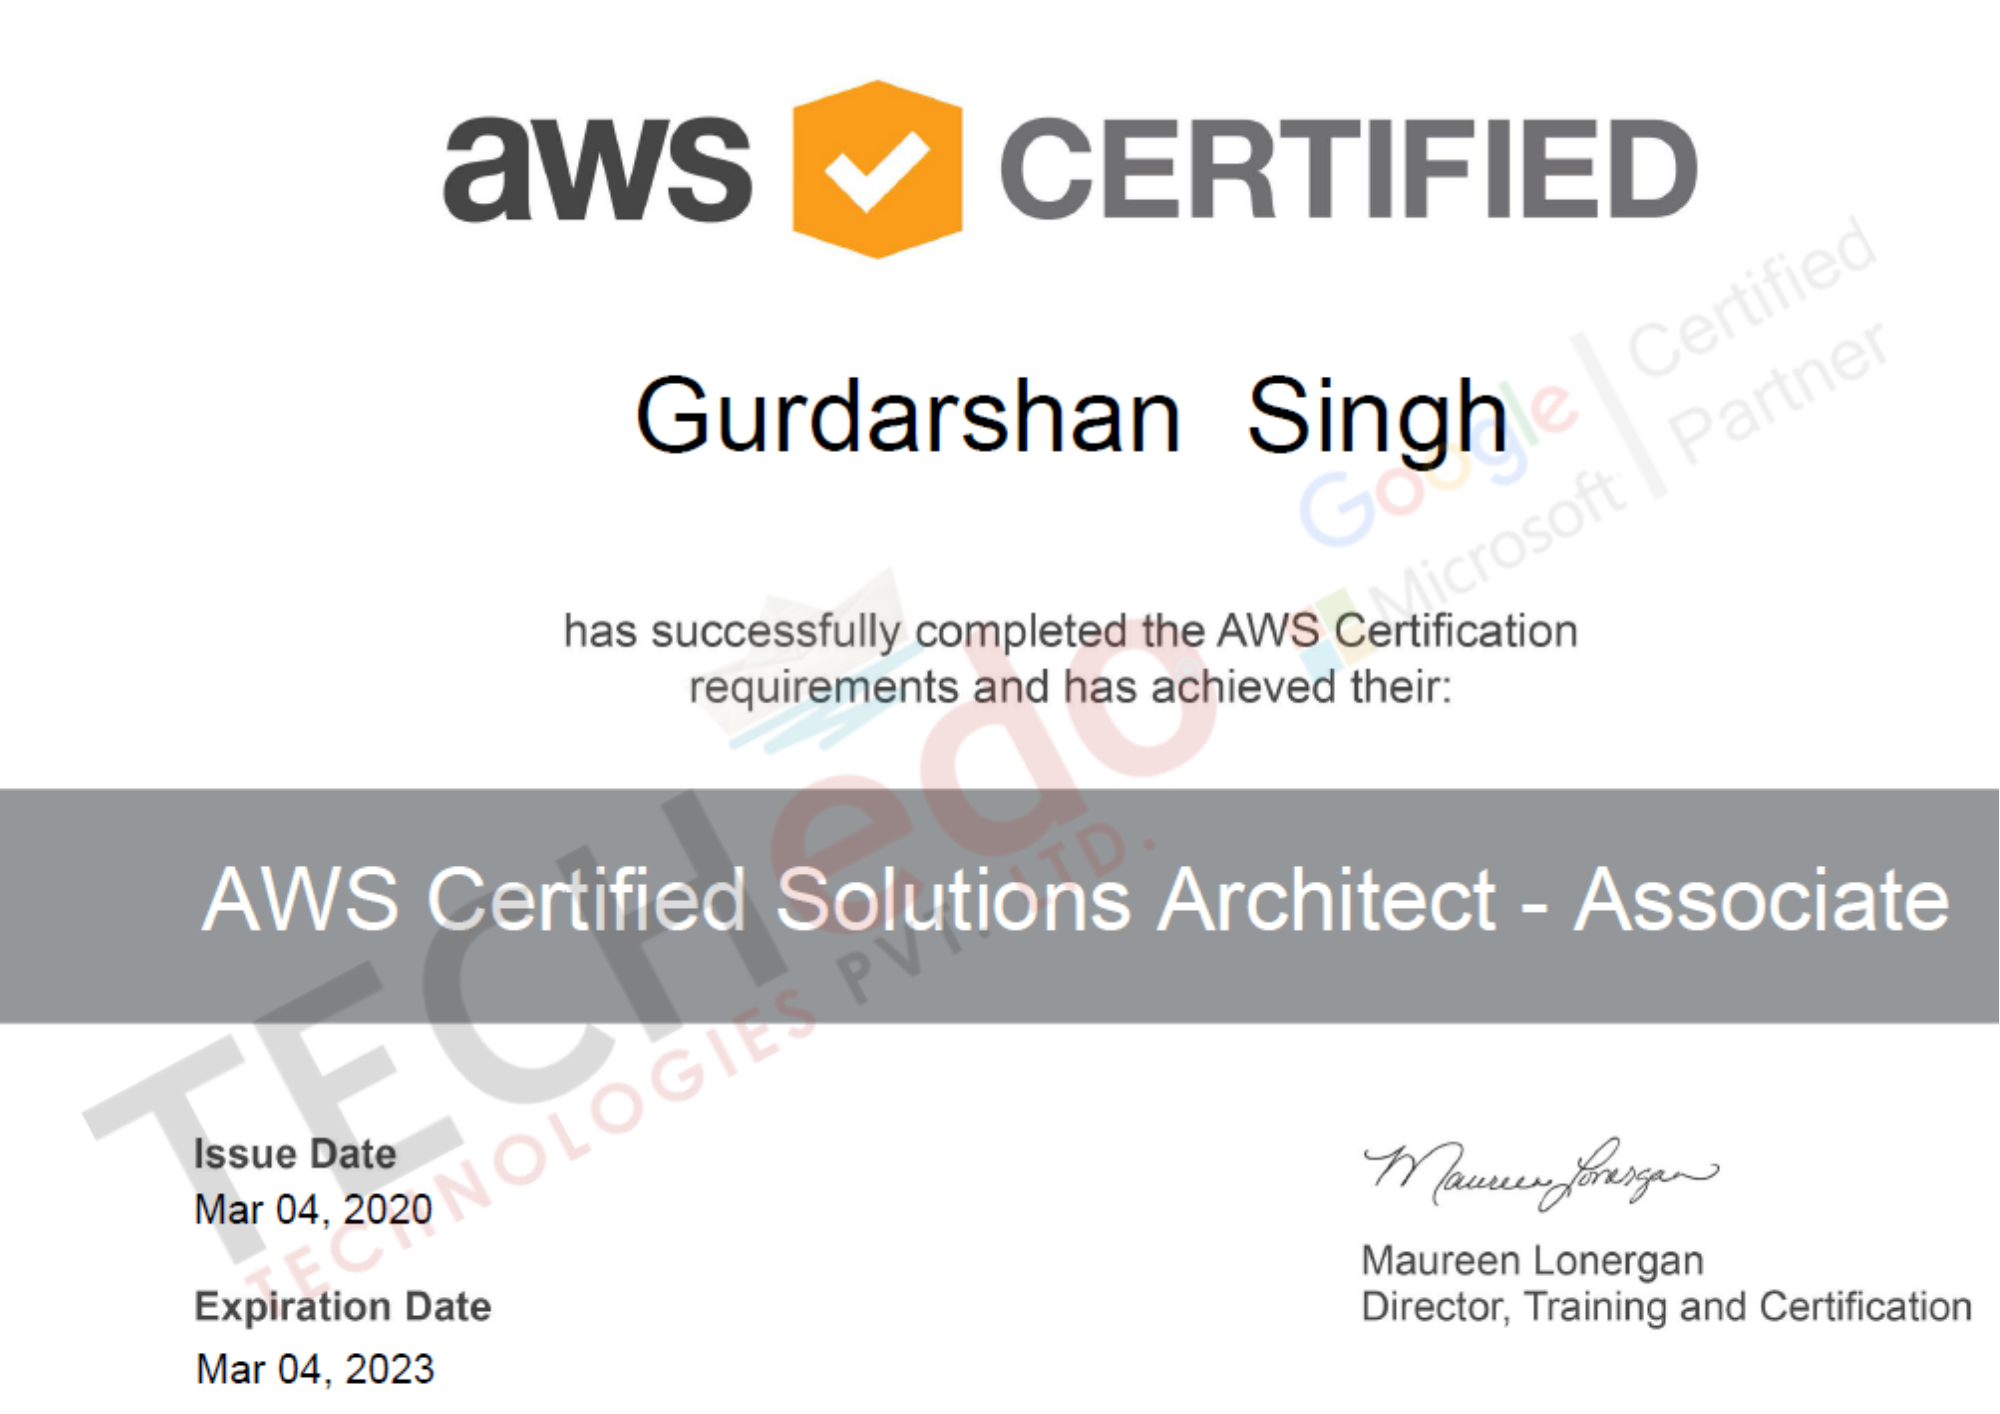 AWS Grdarshan Certificate